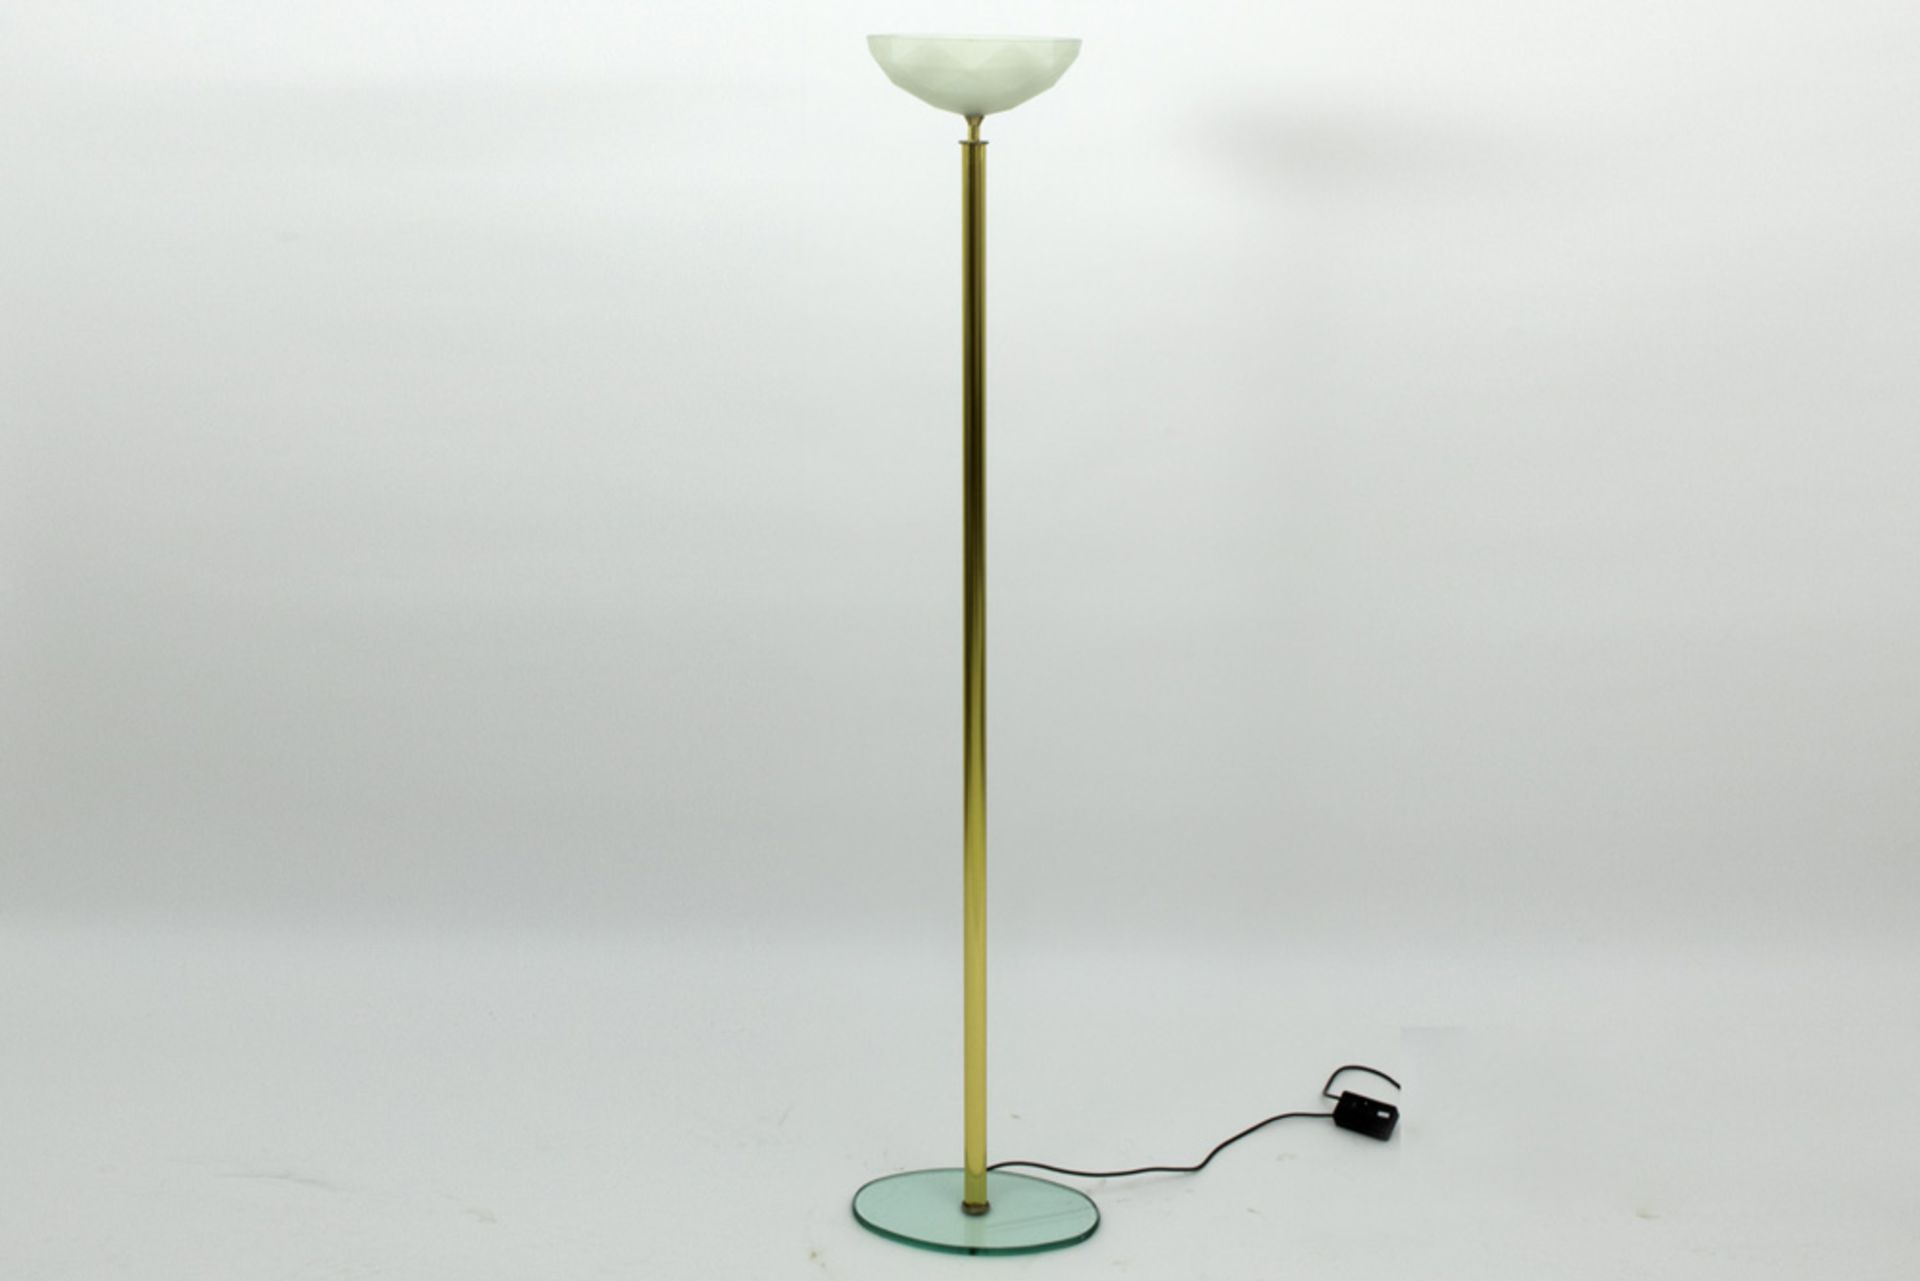 nineties' design lamp with base in glass || Staande designlamp in metaal met glazen voet en met